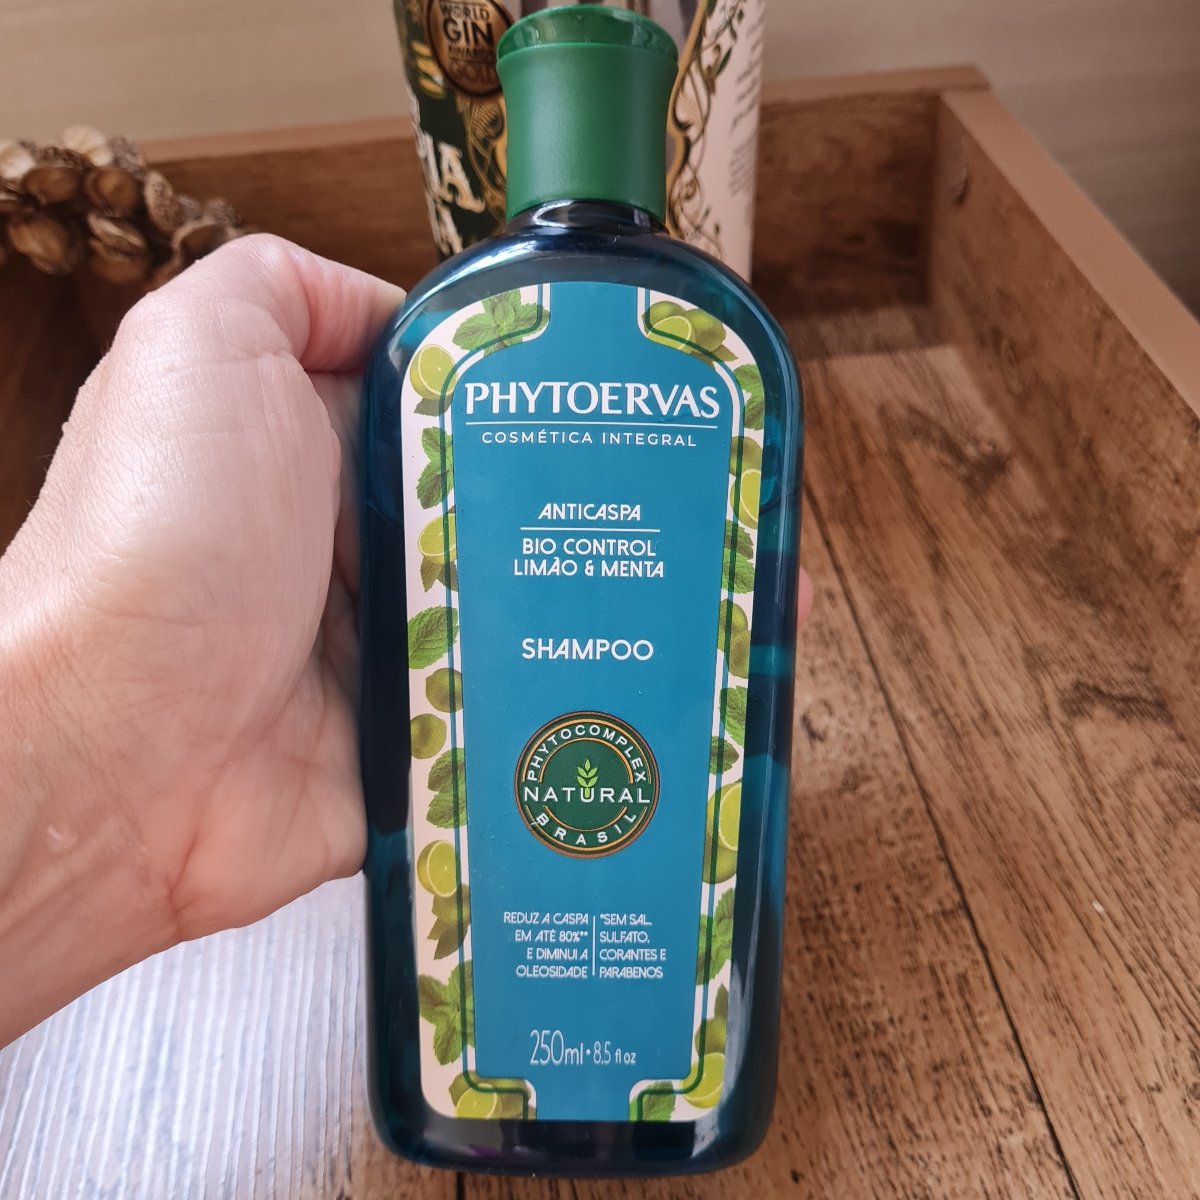 Phytoervas Shampoo Anticaspa Limão & Menta Reviews